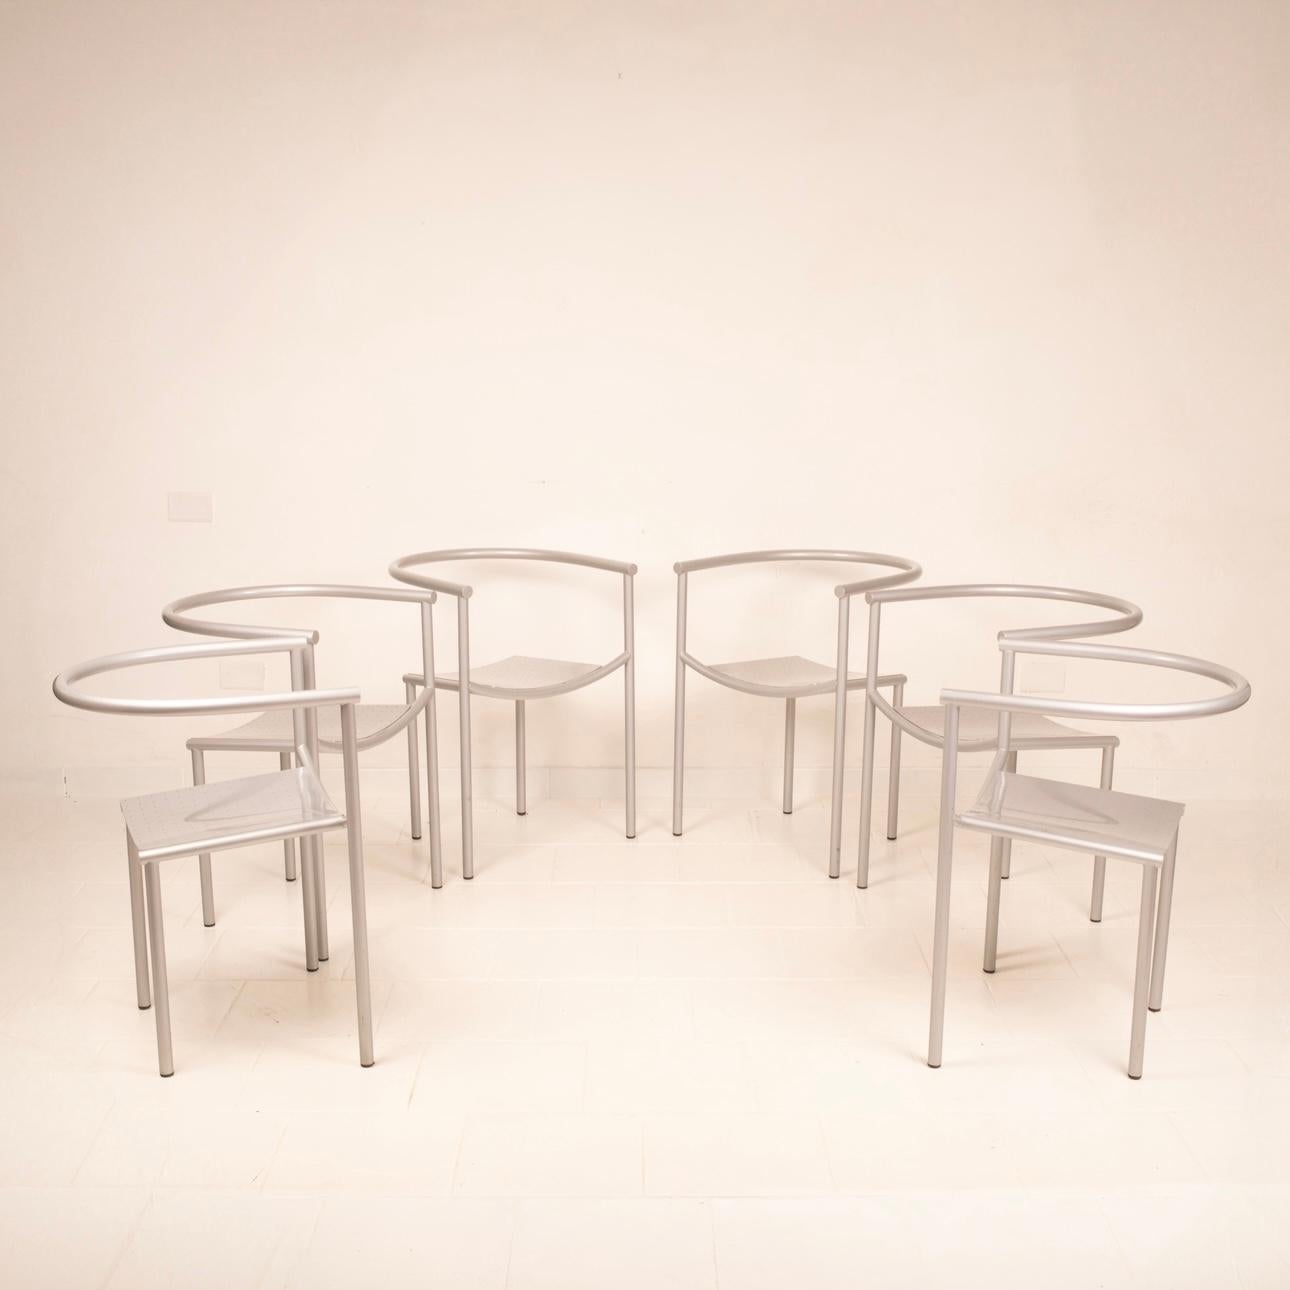 Superbe ensemble de 6 chaises postmodernes Von Vogelsang conçues par Philippe Starck en 1985 et fabriquées par Driade.
Ils sont fabriqués en acier tubulaire et en tôle perforée peinte en gris. 
Ces chaises au design minimaliste sont extrêmement